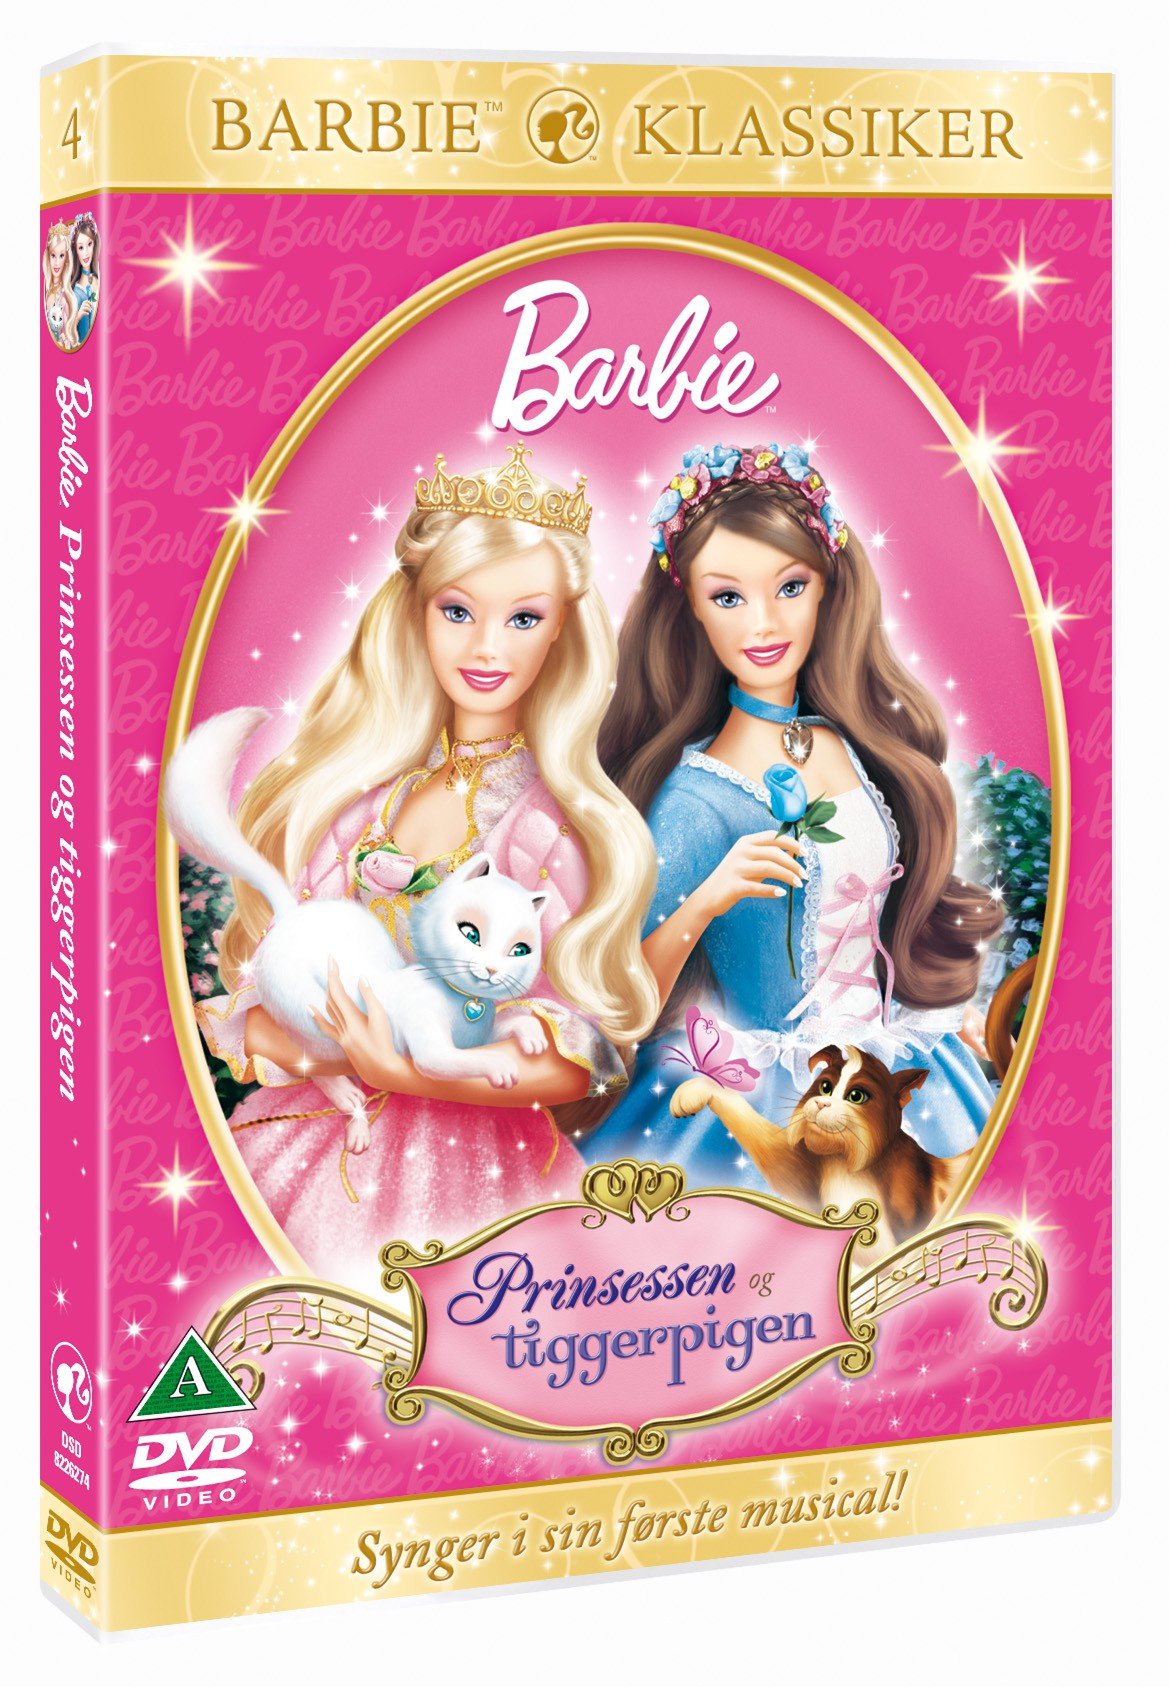 mange af disse Barbie-film husker du? | Woman.dk